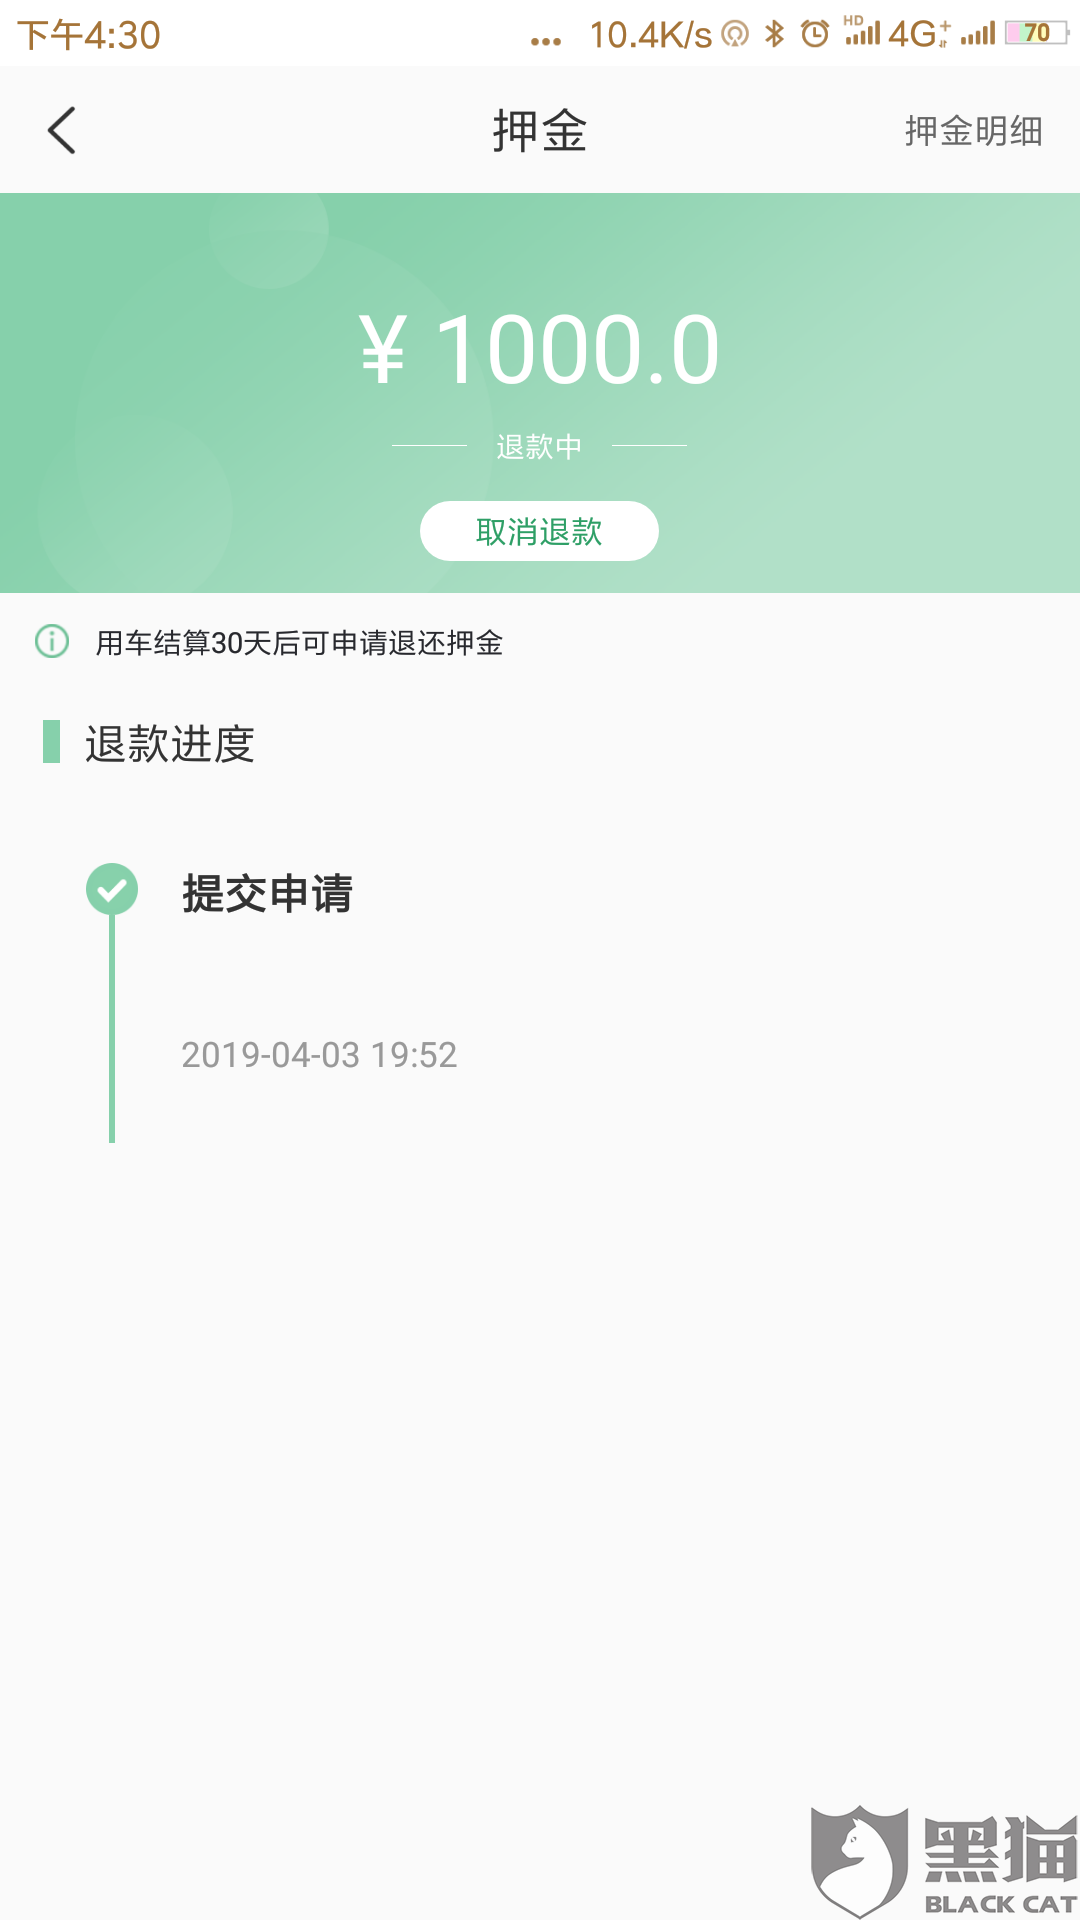 黑猫投诉：重庆盼达汽车租赁有限公司未在规定的15个工作日内退还